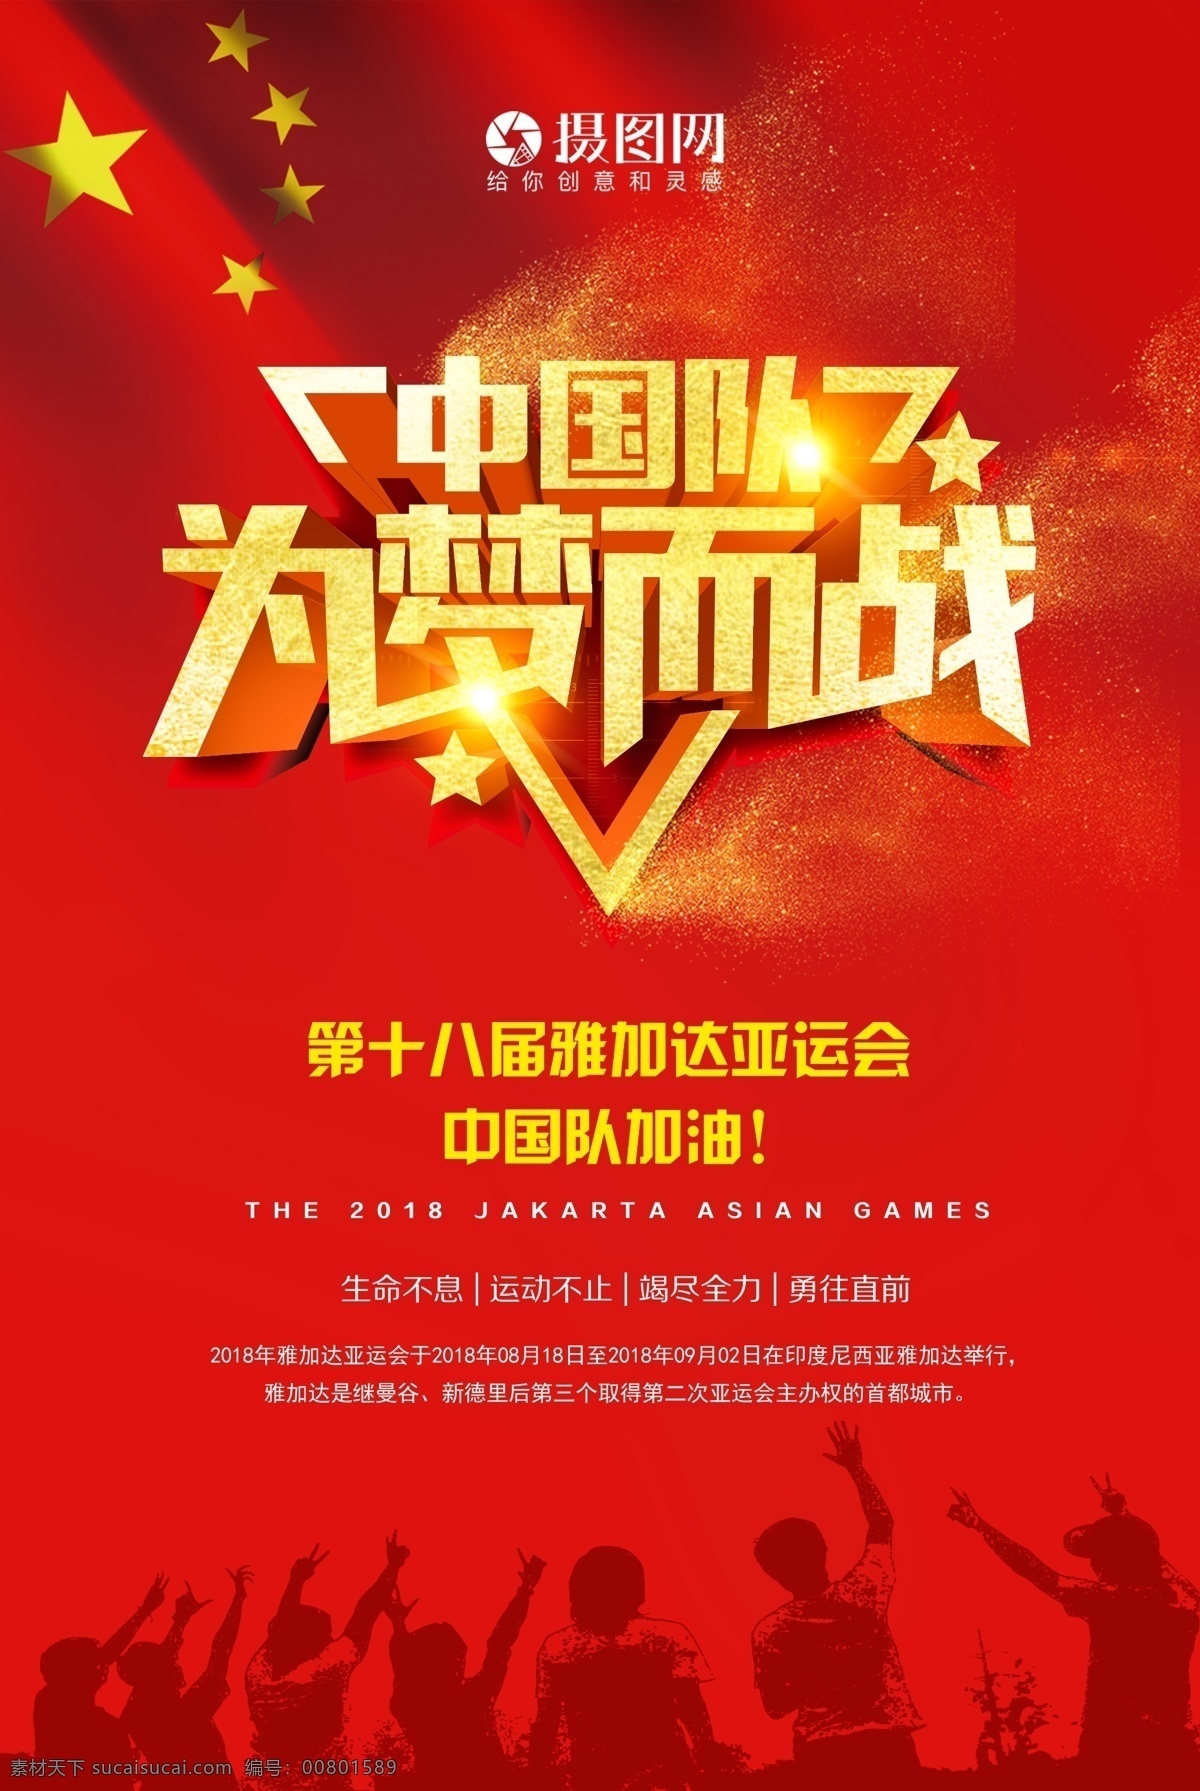 中国队 梦 战 海报 雅加达亚运会 雅加达 亚运会 运动 炫彩 健儿 中国 加油 国旗